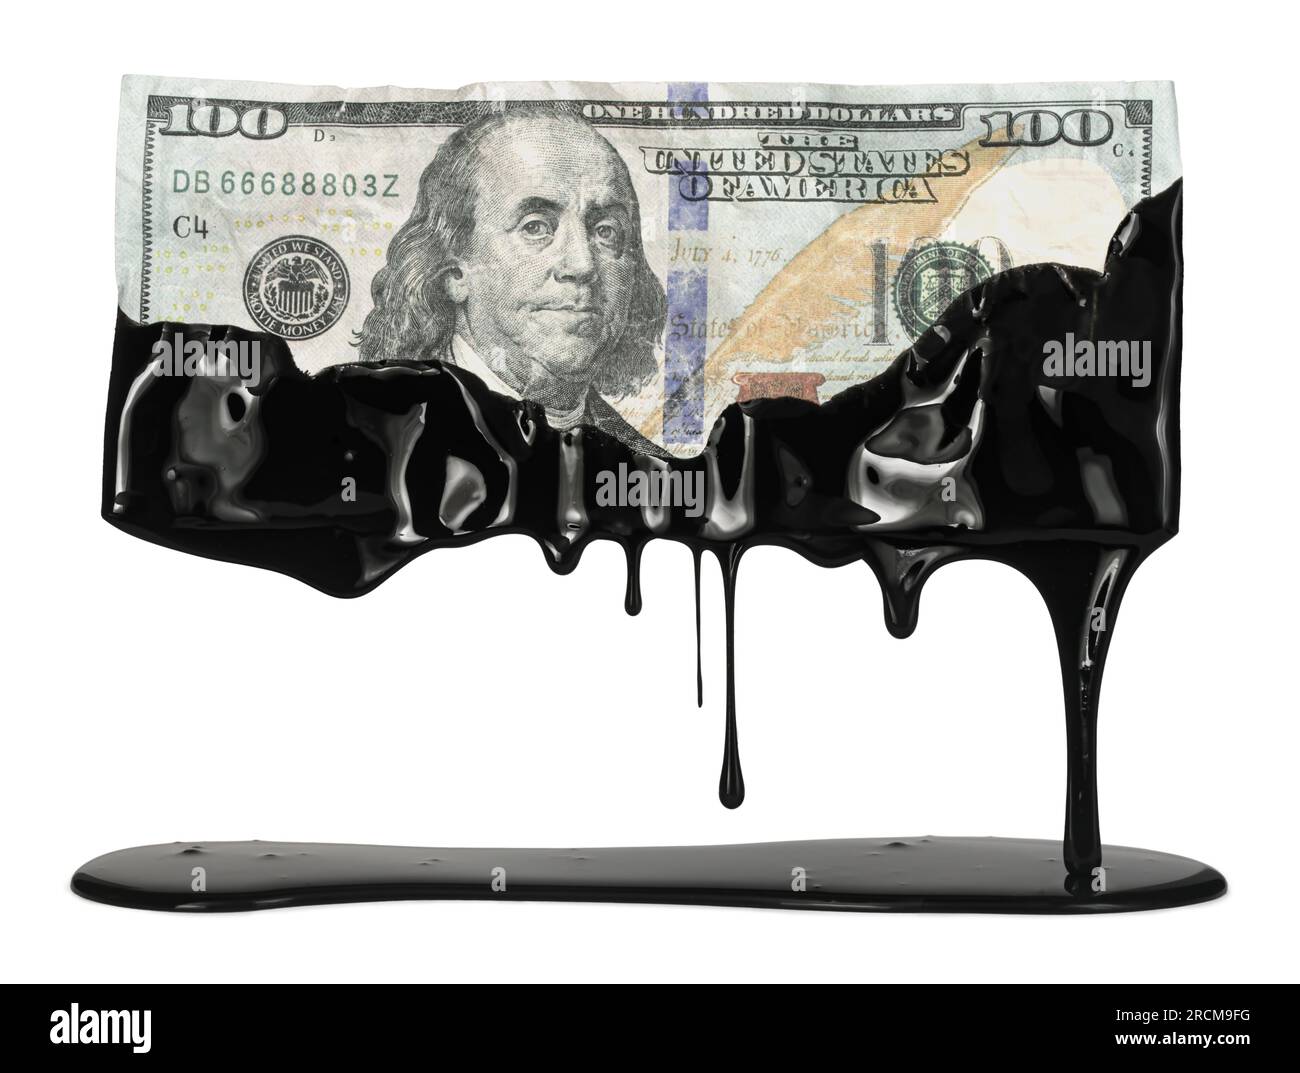 Der US-Dollar-Schein tropft mit Rohöl, was die hohen Gaskosten an der Pumpe oder die Abhängigkeit der USA von fossilen Brennstoffen zeigt. Stockfoto